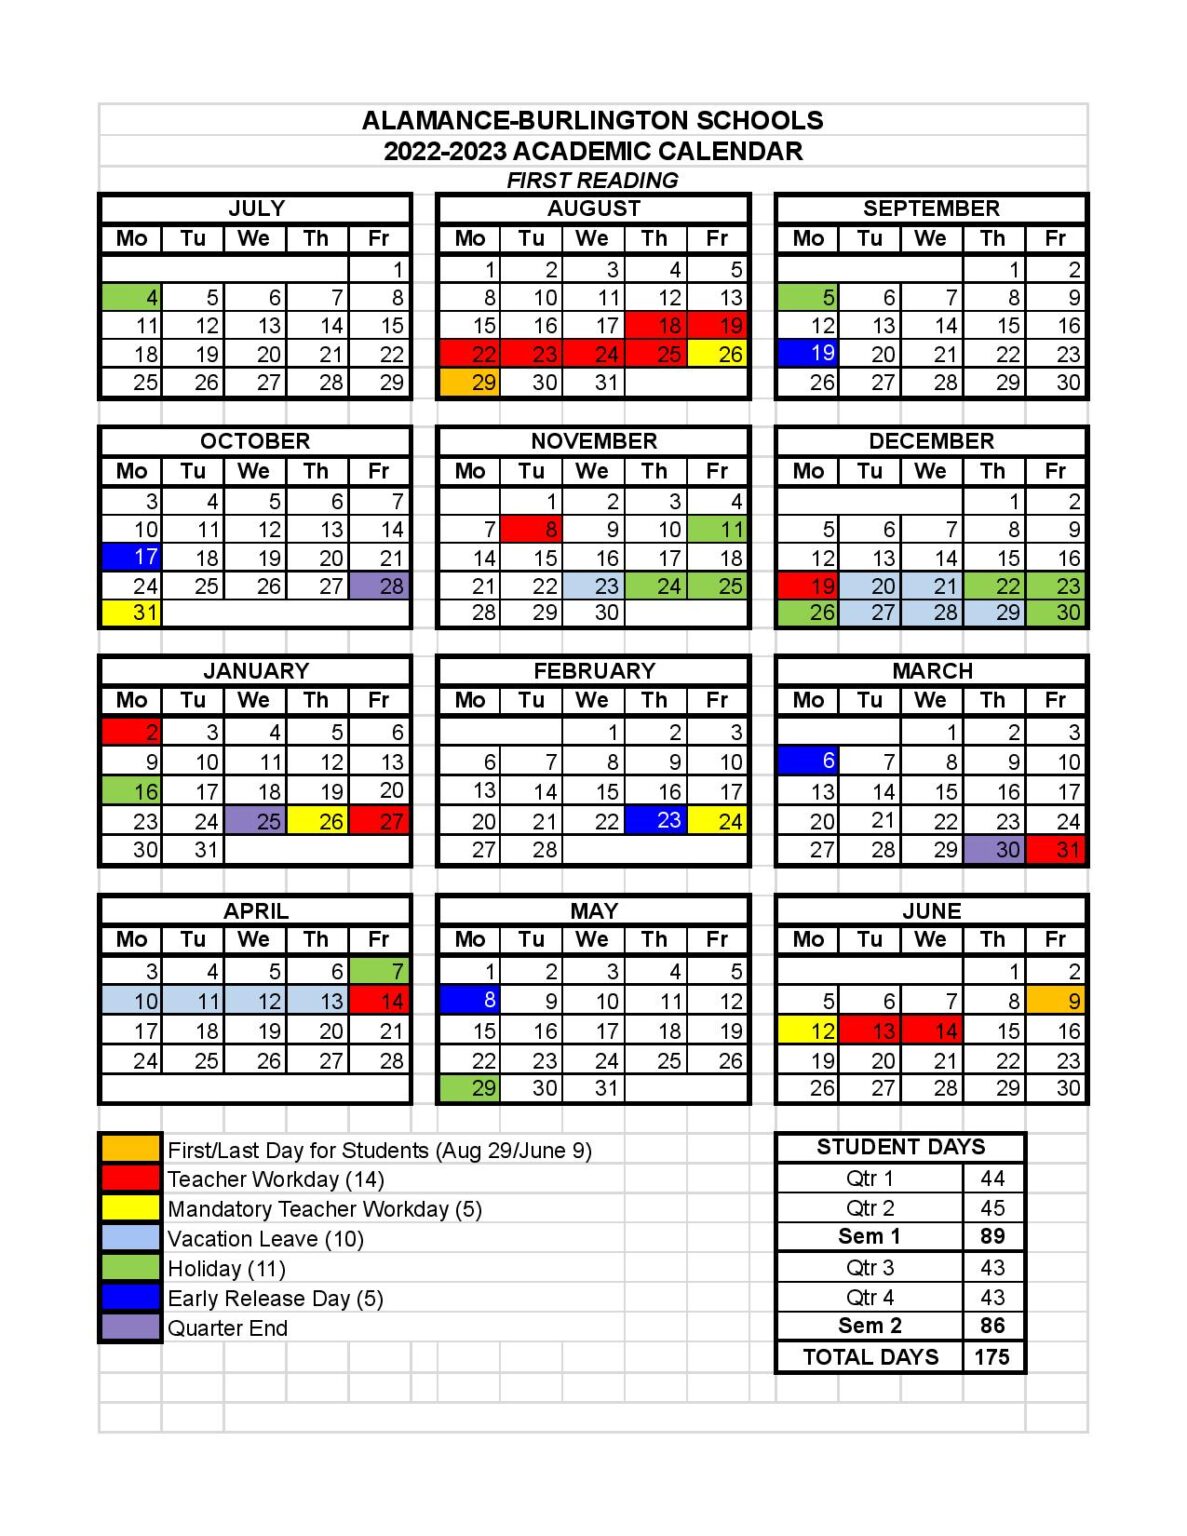 Alamance-Burlington Schools Calendar 2022-2023 in PDF